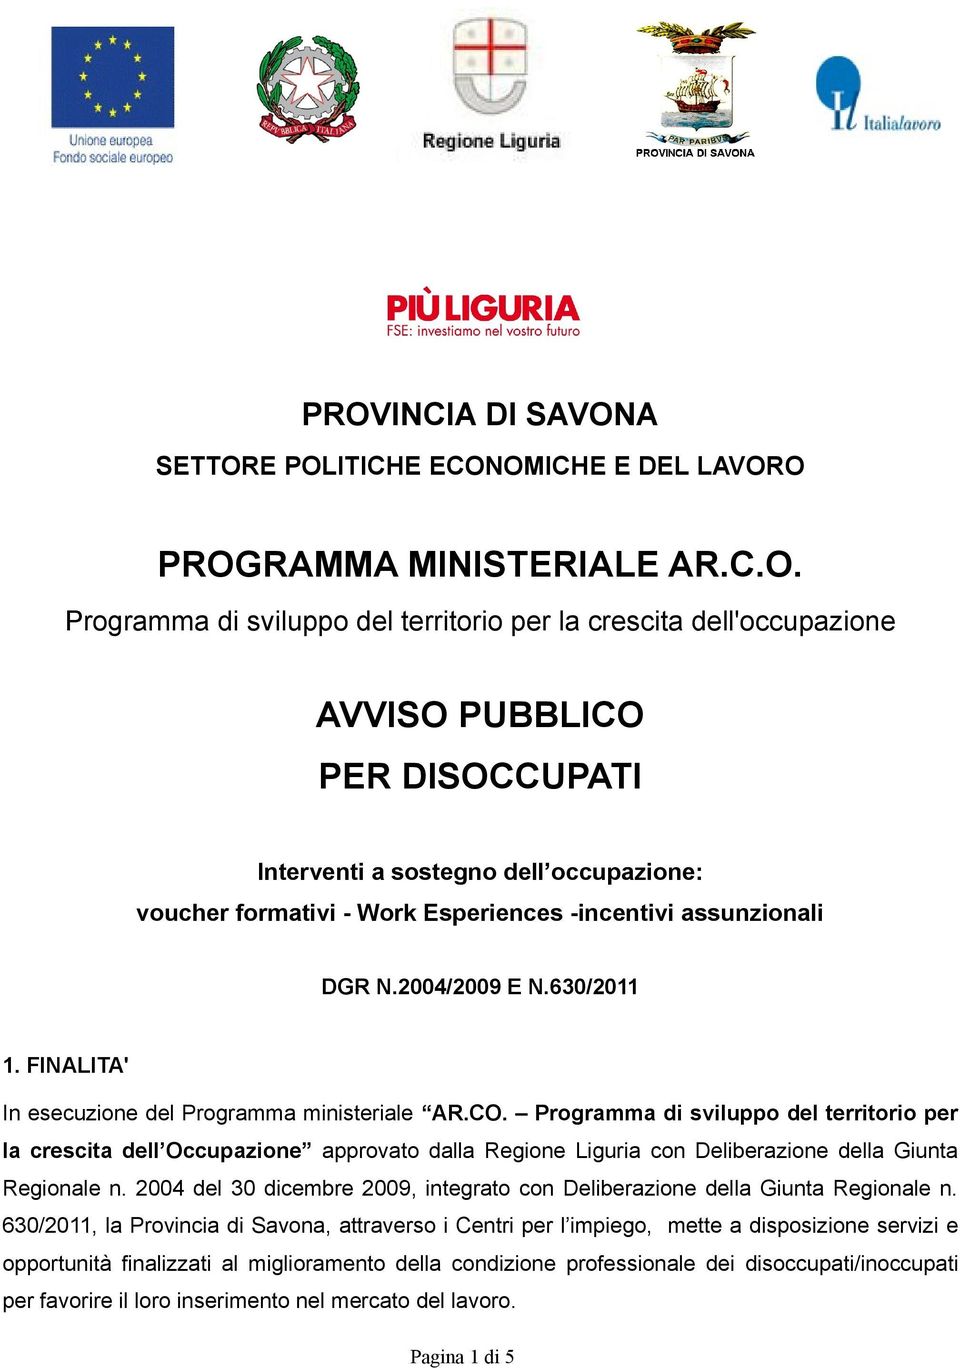 Programma di sviluppo del territorio per la crescita dell Occupazione approvato dalla Regione Liguria con Deliberazione della Giunta Regionale n.